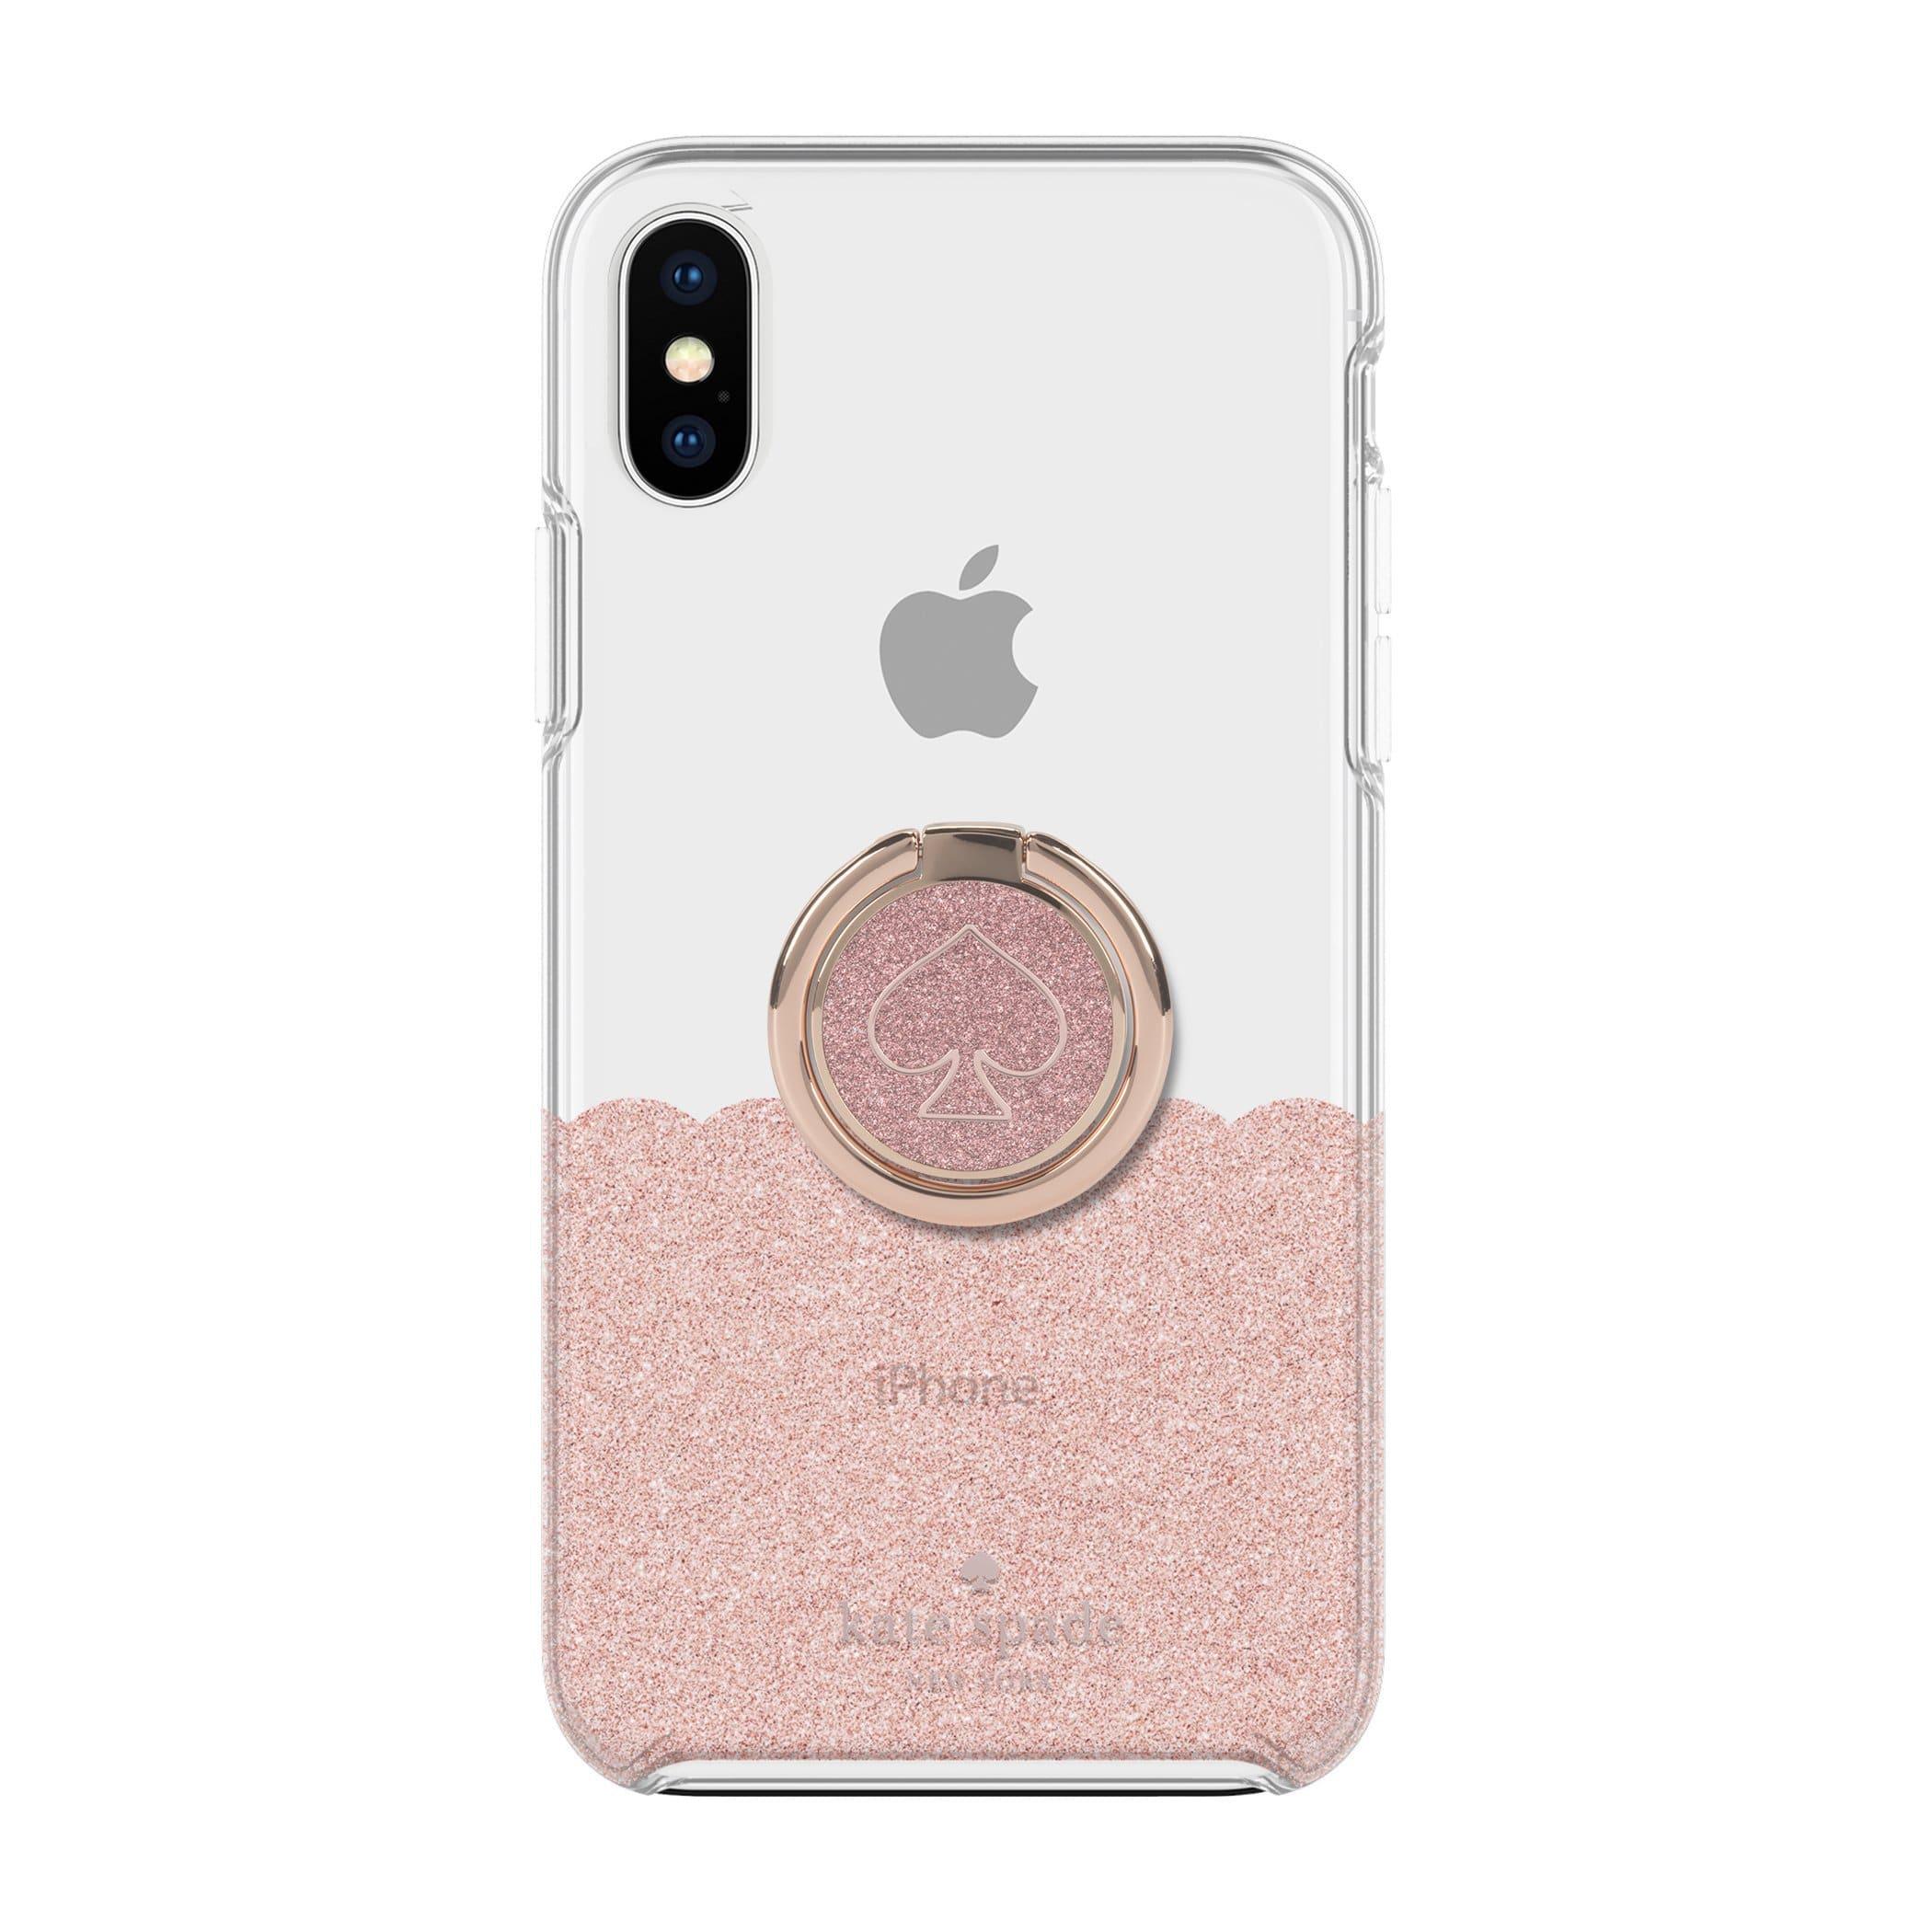 كفر حماية آيفون KATE SPADE NEW YORK Gift Set: Ring Stand & Protective Hardshell Case -  Scallop Rose Gold Glitter / Clear For iPhone XS/X